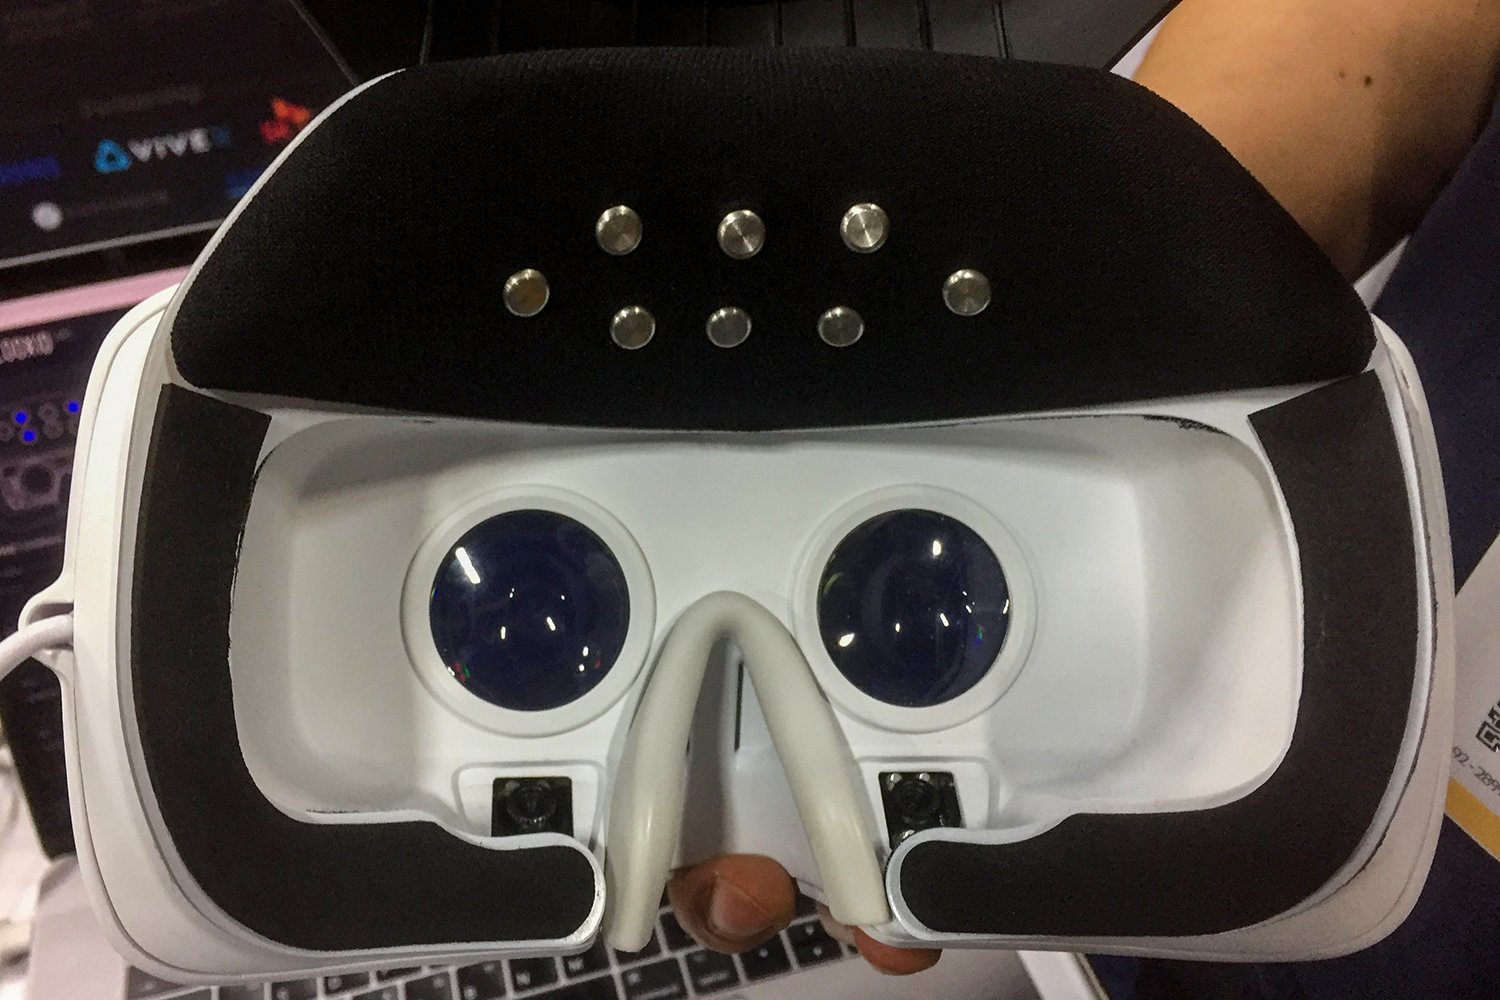 VR Innovations looxid headset inside